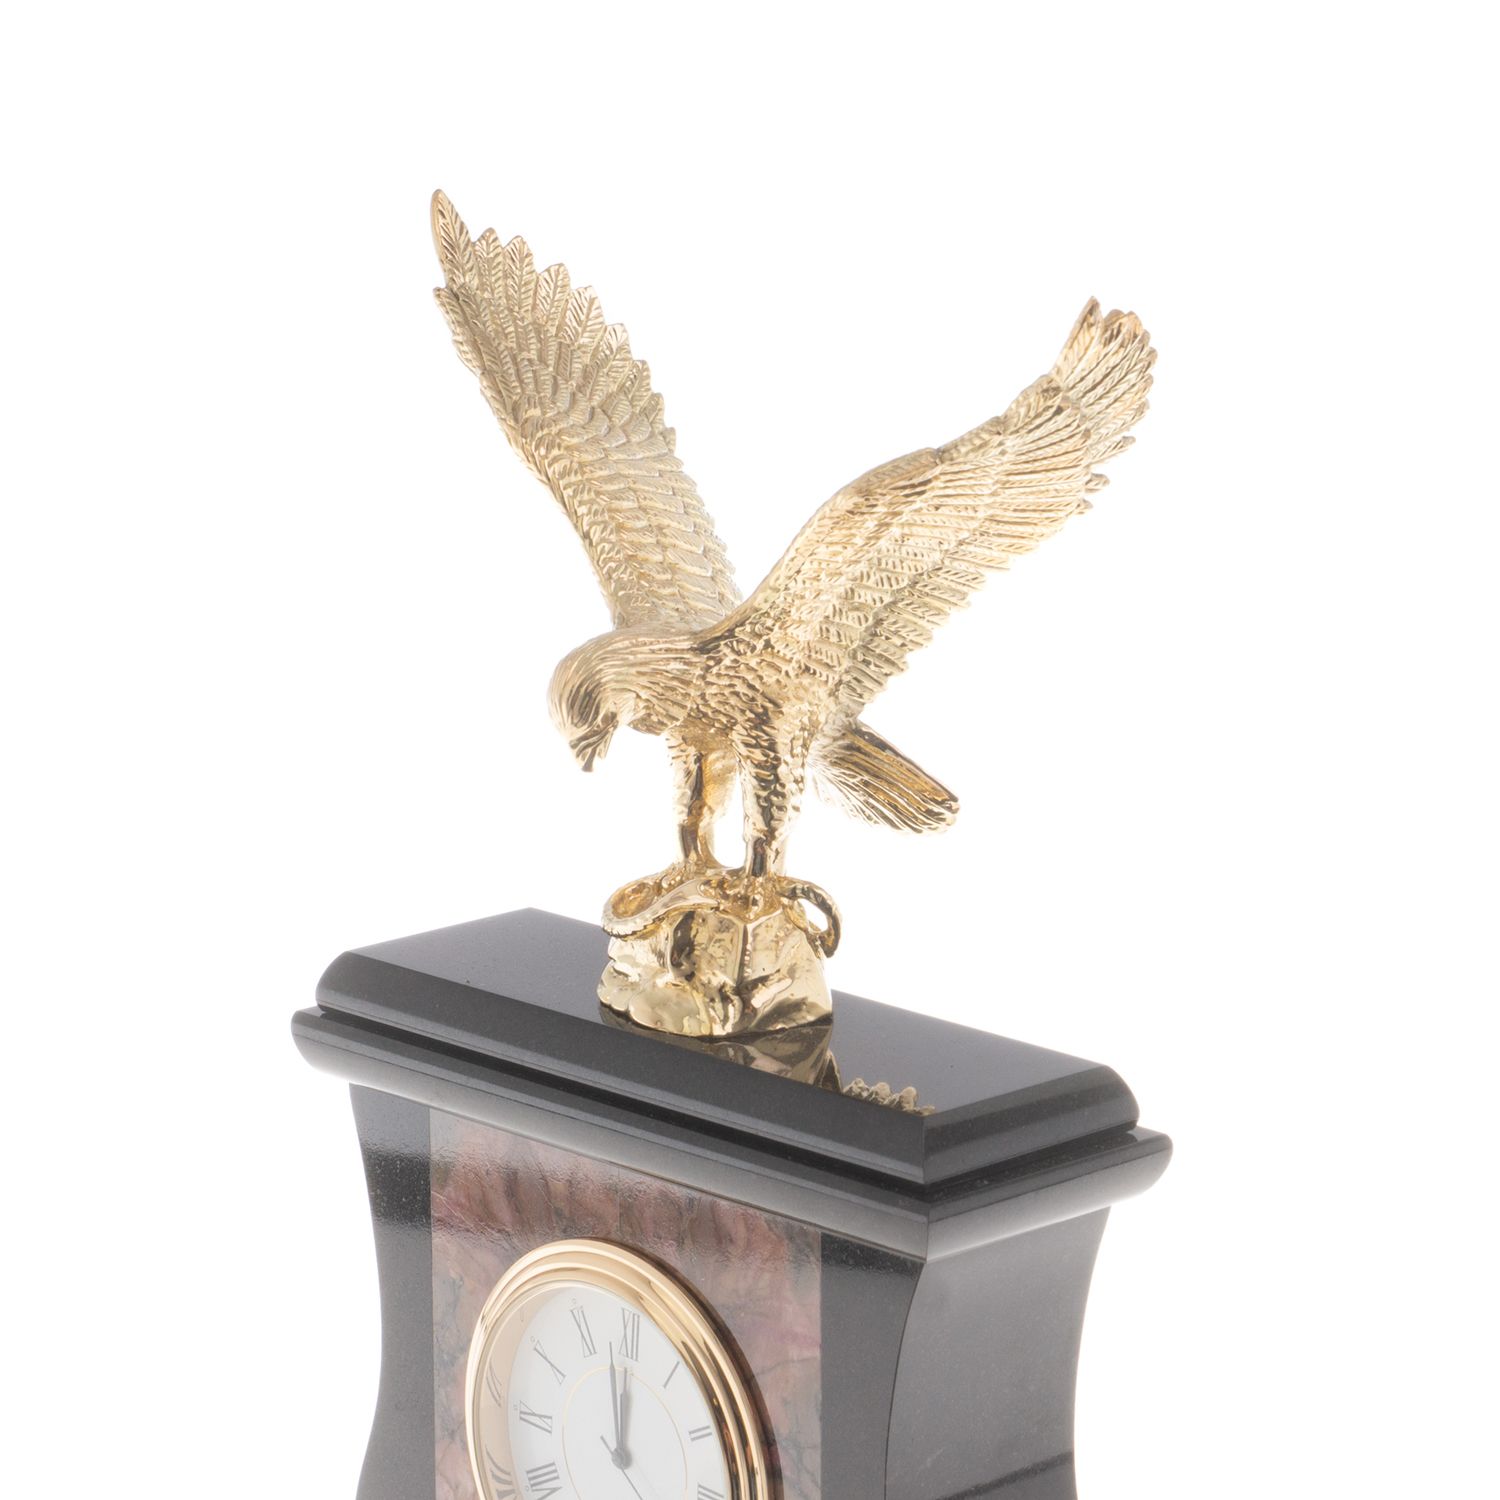 Новости часа орла. Часы с орлом. Немецкие часы с орлом. Часы в Орлов. Фирма часов с орлом.